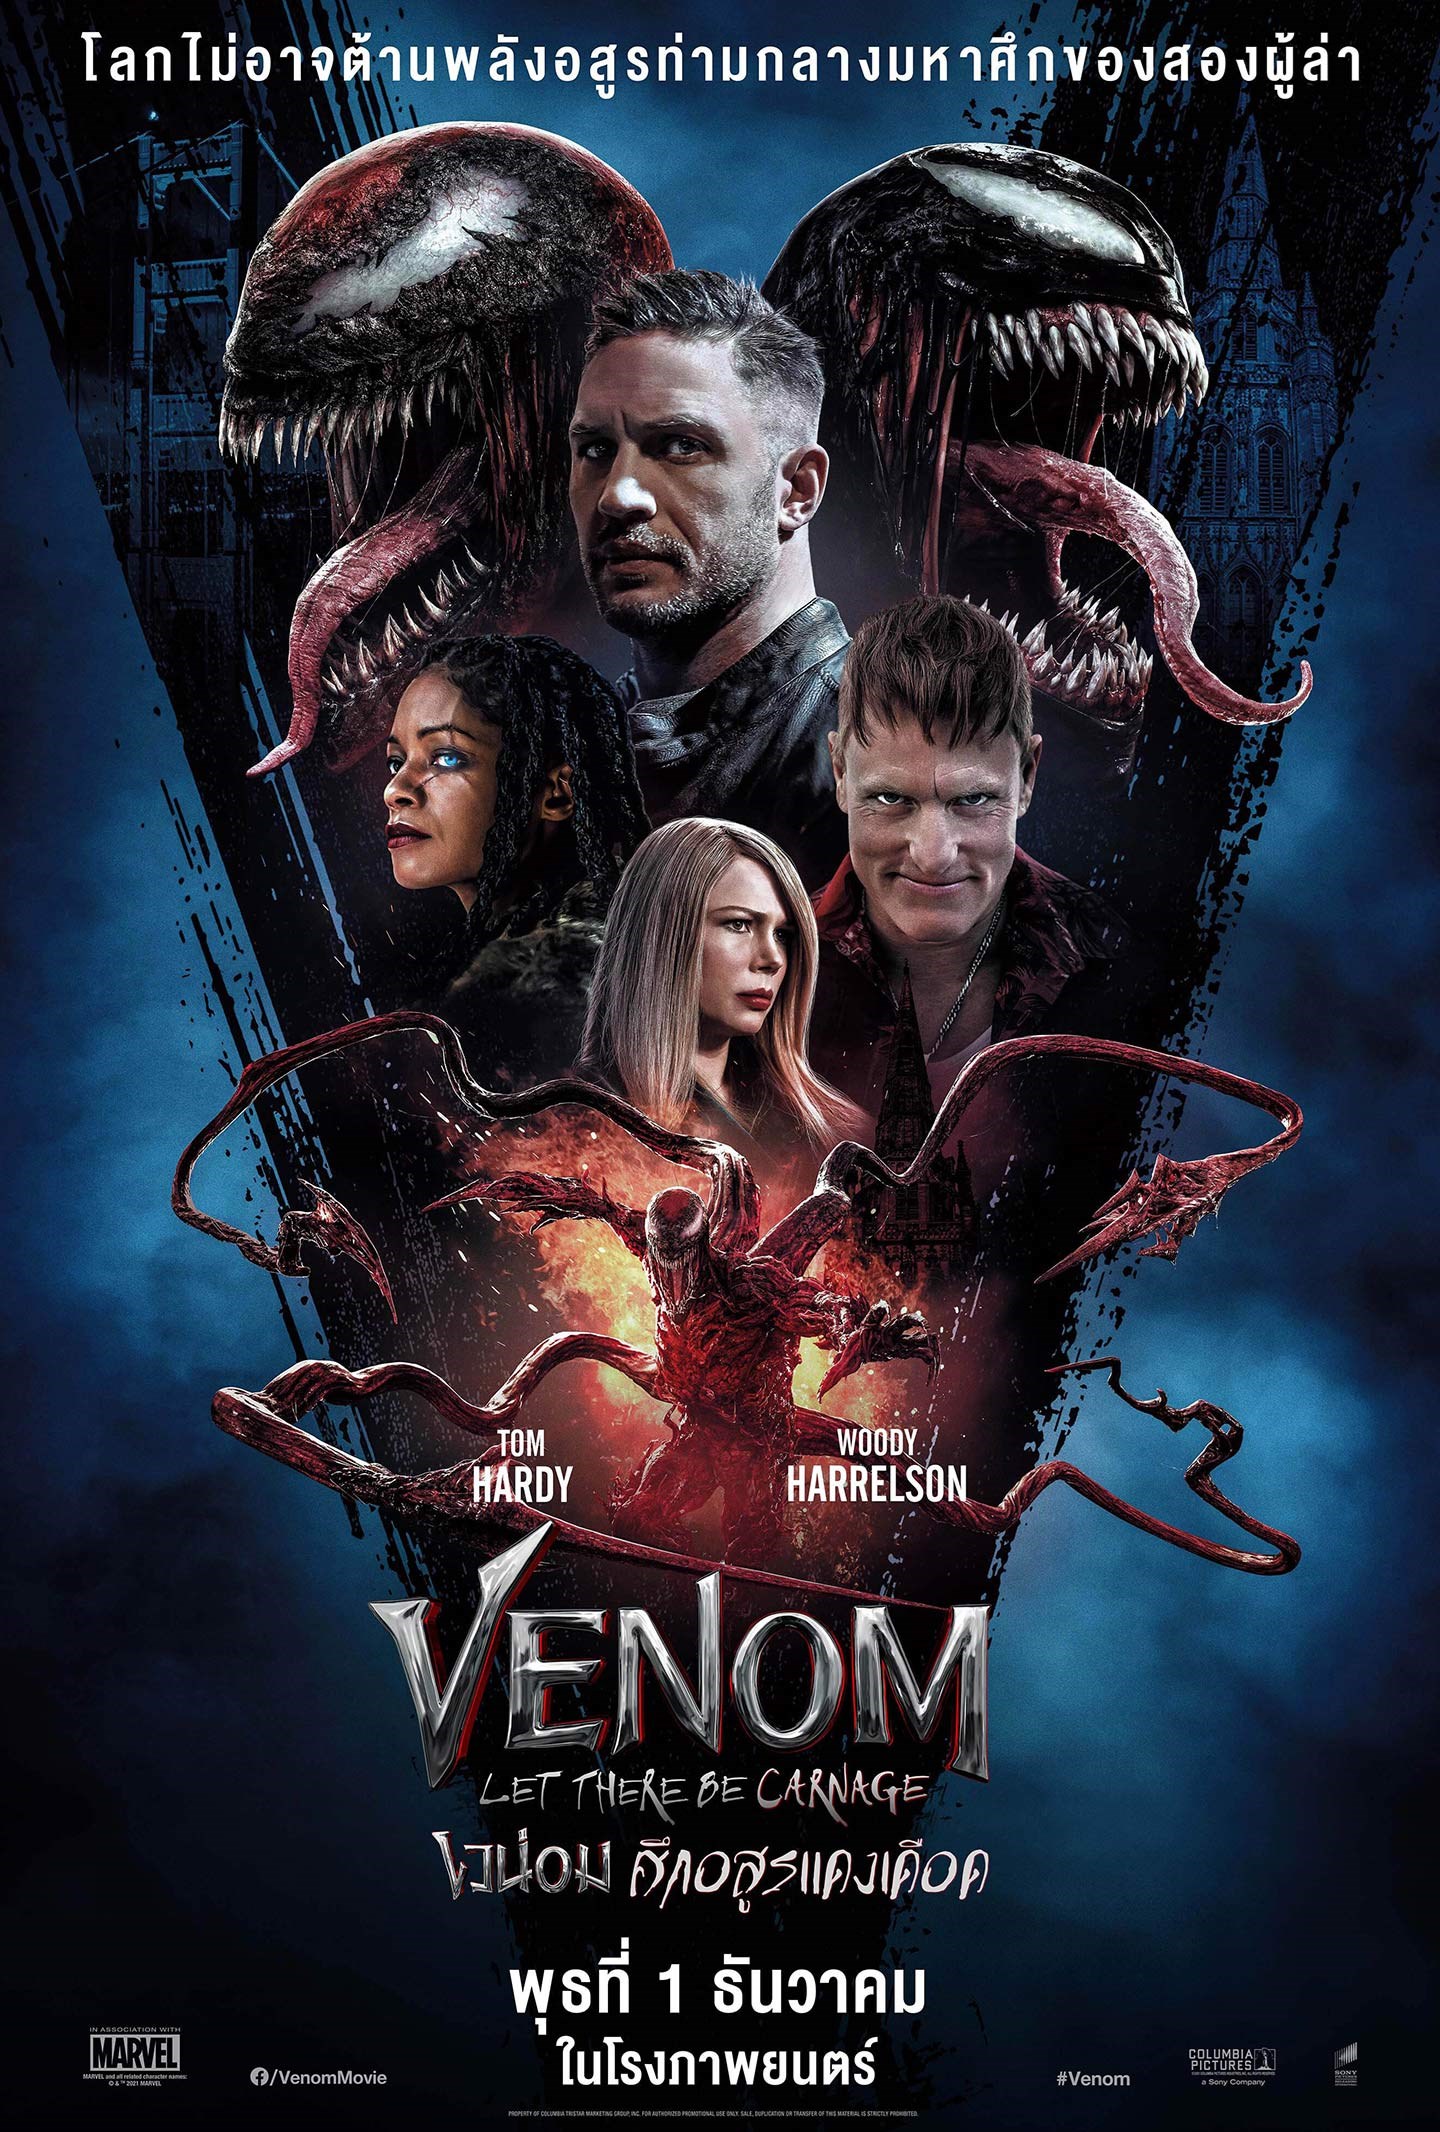 ดูหนังออนไลน์ฟรี Venom Let There Be Carnage เวน่อม 2 ศึกอสูรแดงเดือด 2021 พากย์ไทย